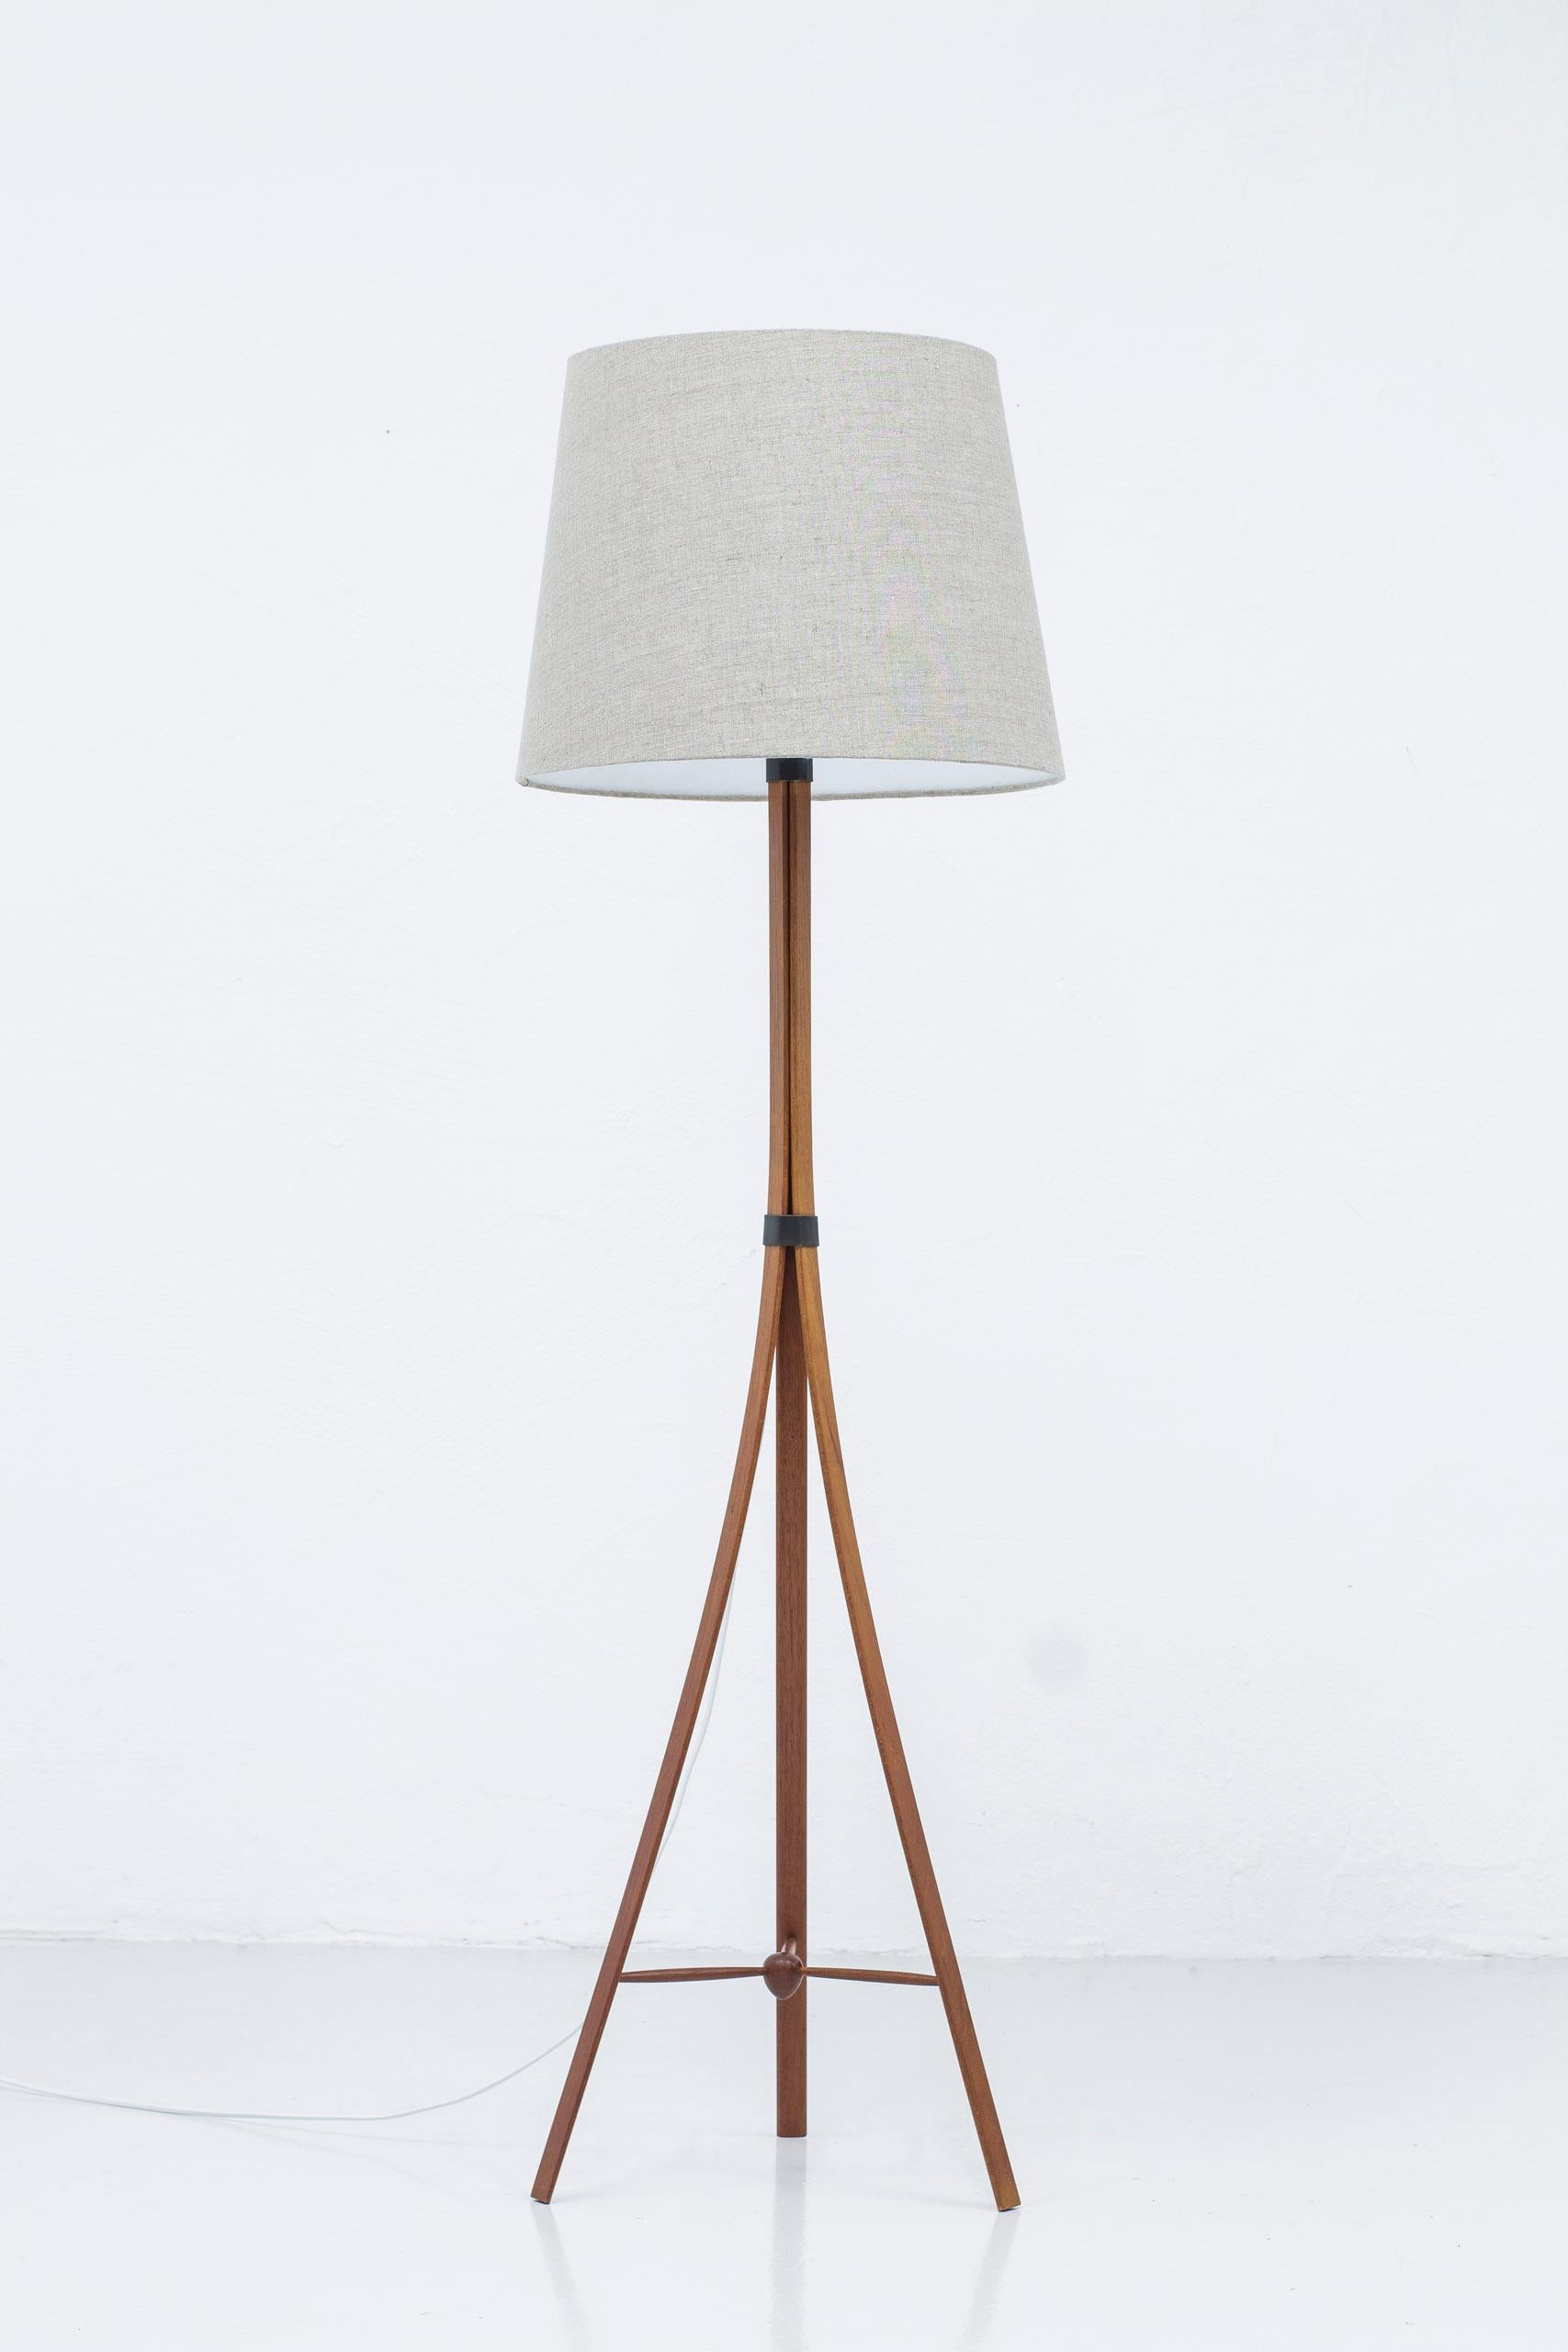 Brass G-35 Teak Floor Lamp by Alf Svensson for Bergboms, Sweden, 1950s For Sale